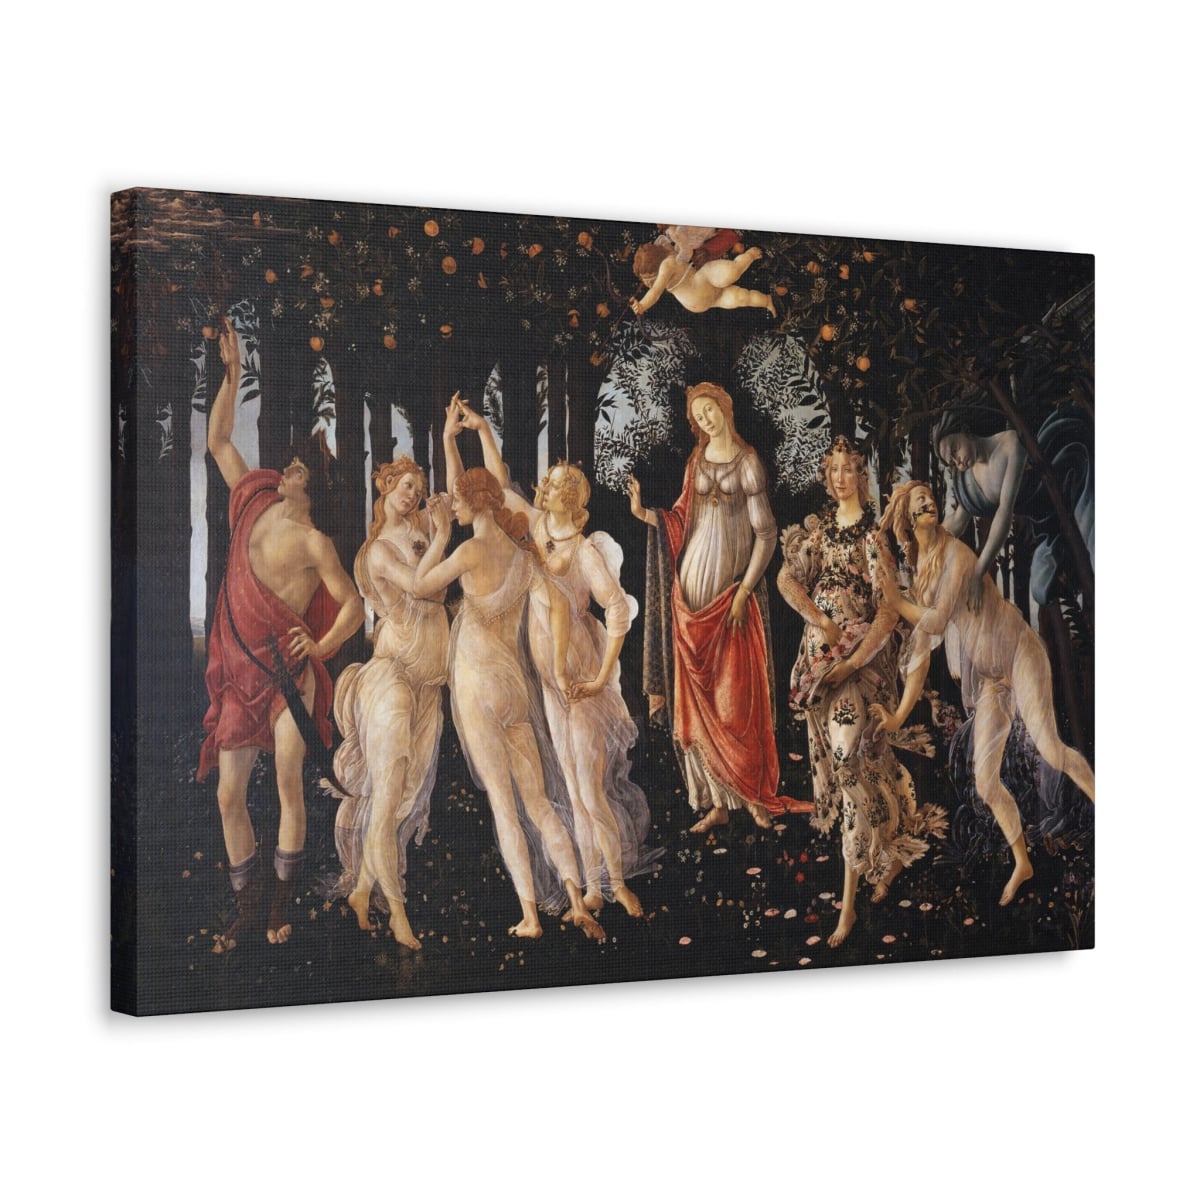 Primavera by Sandro Botticelli Canvas Gallery Wrap